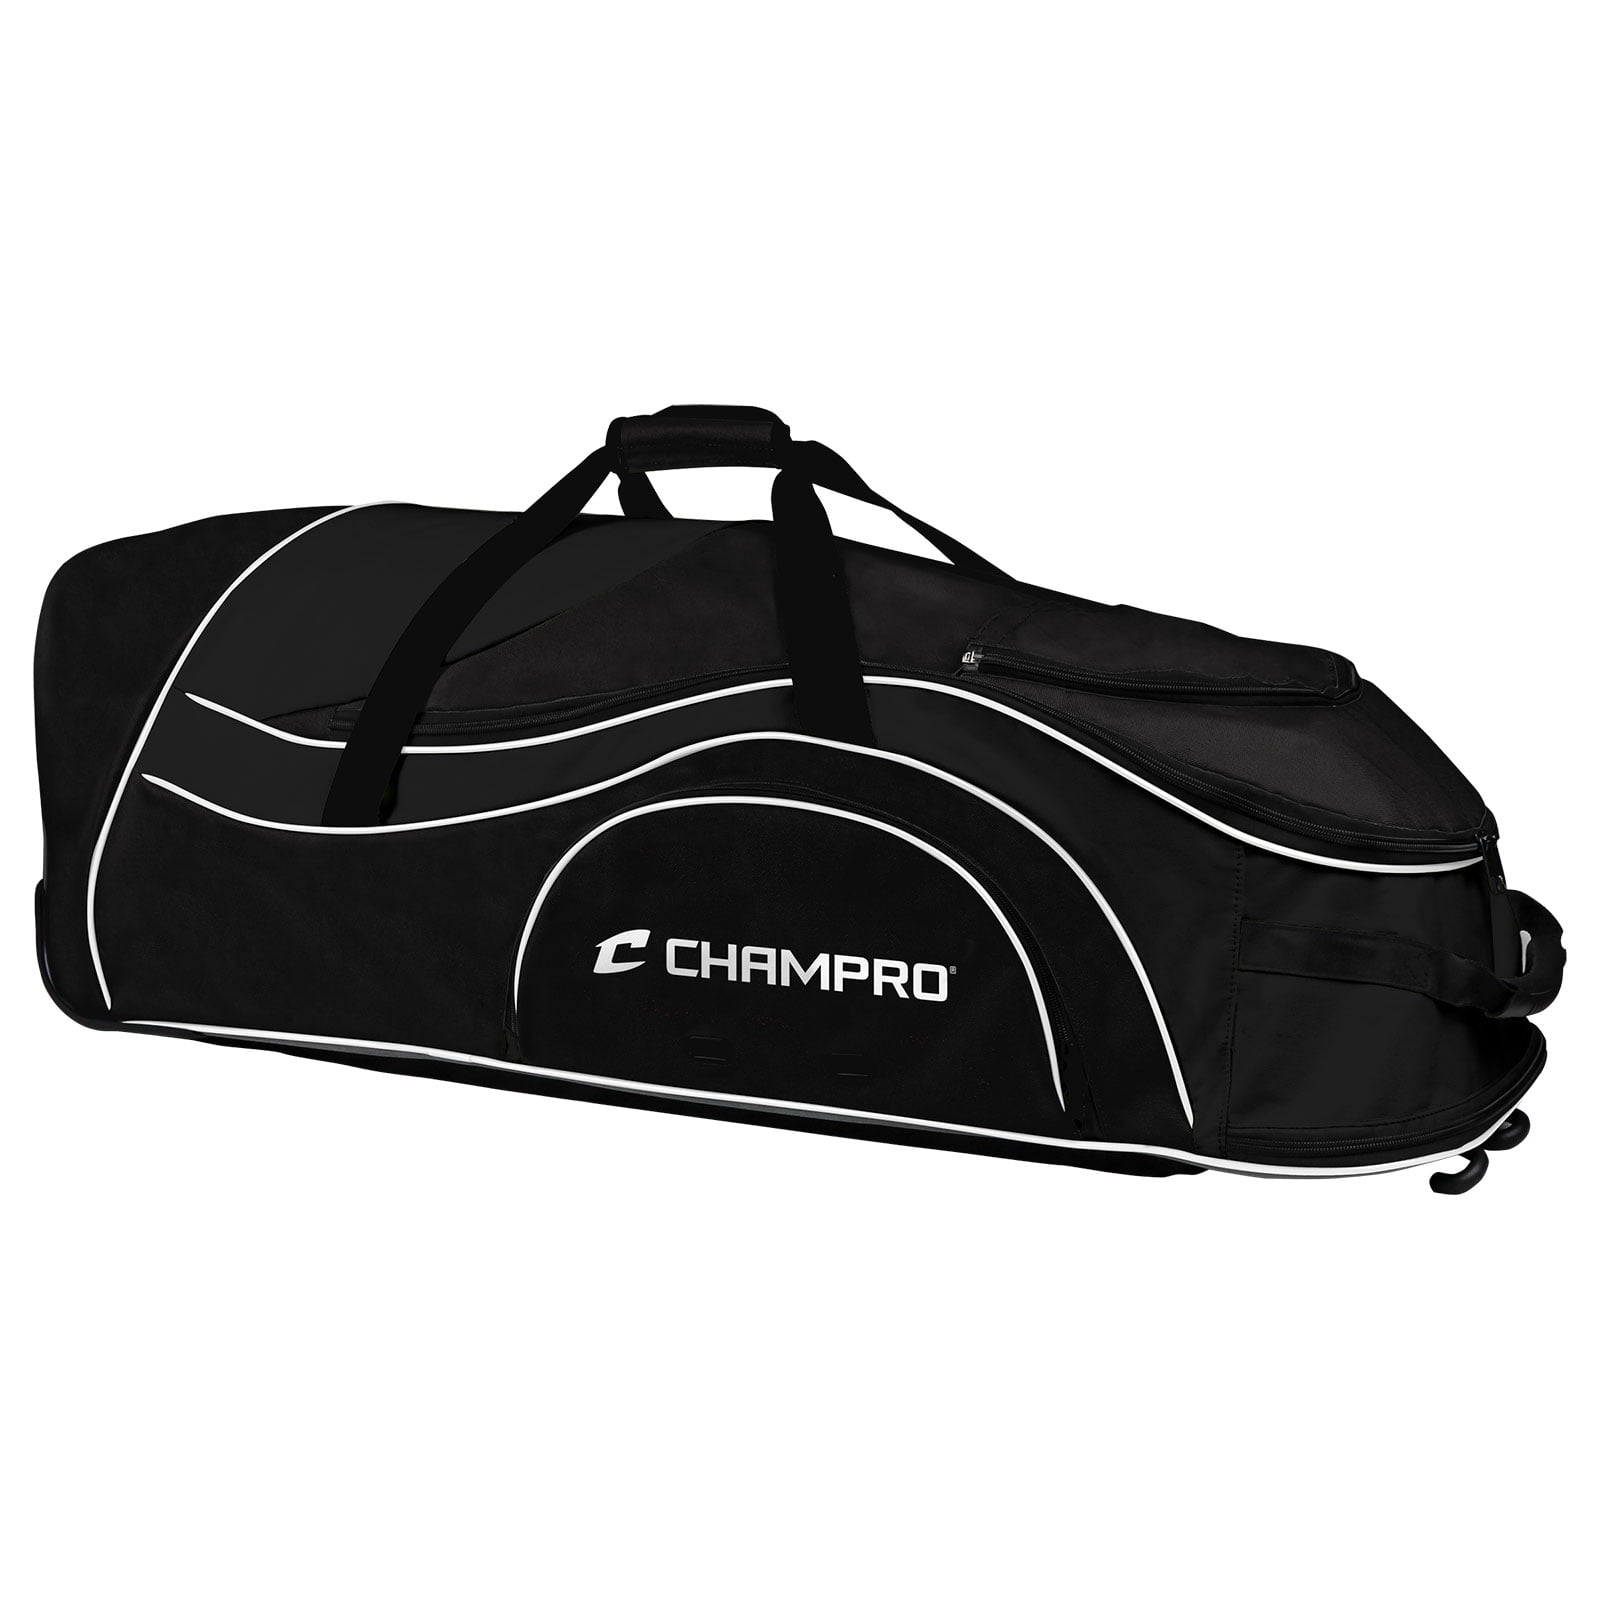 Champro Pro-Plus Catcher's Roller Bag 